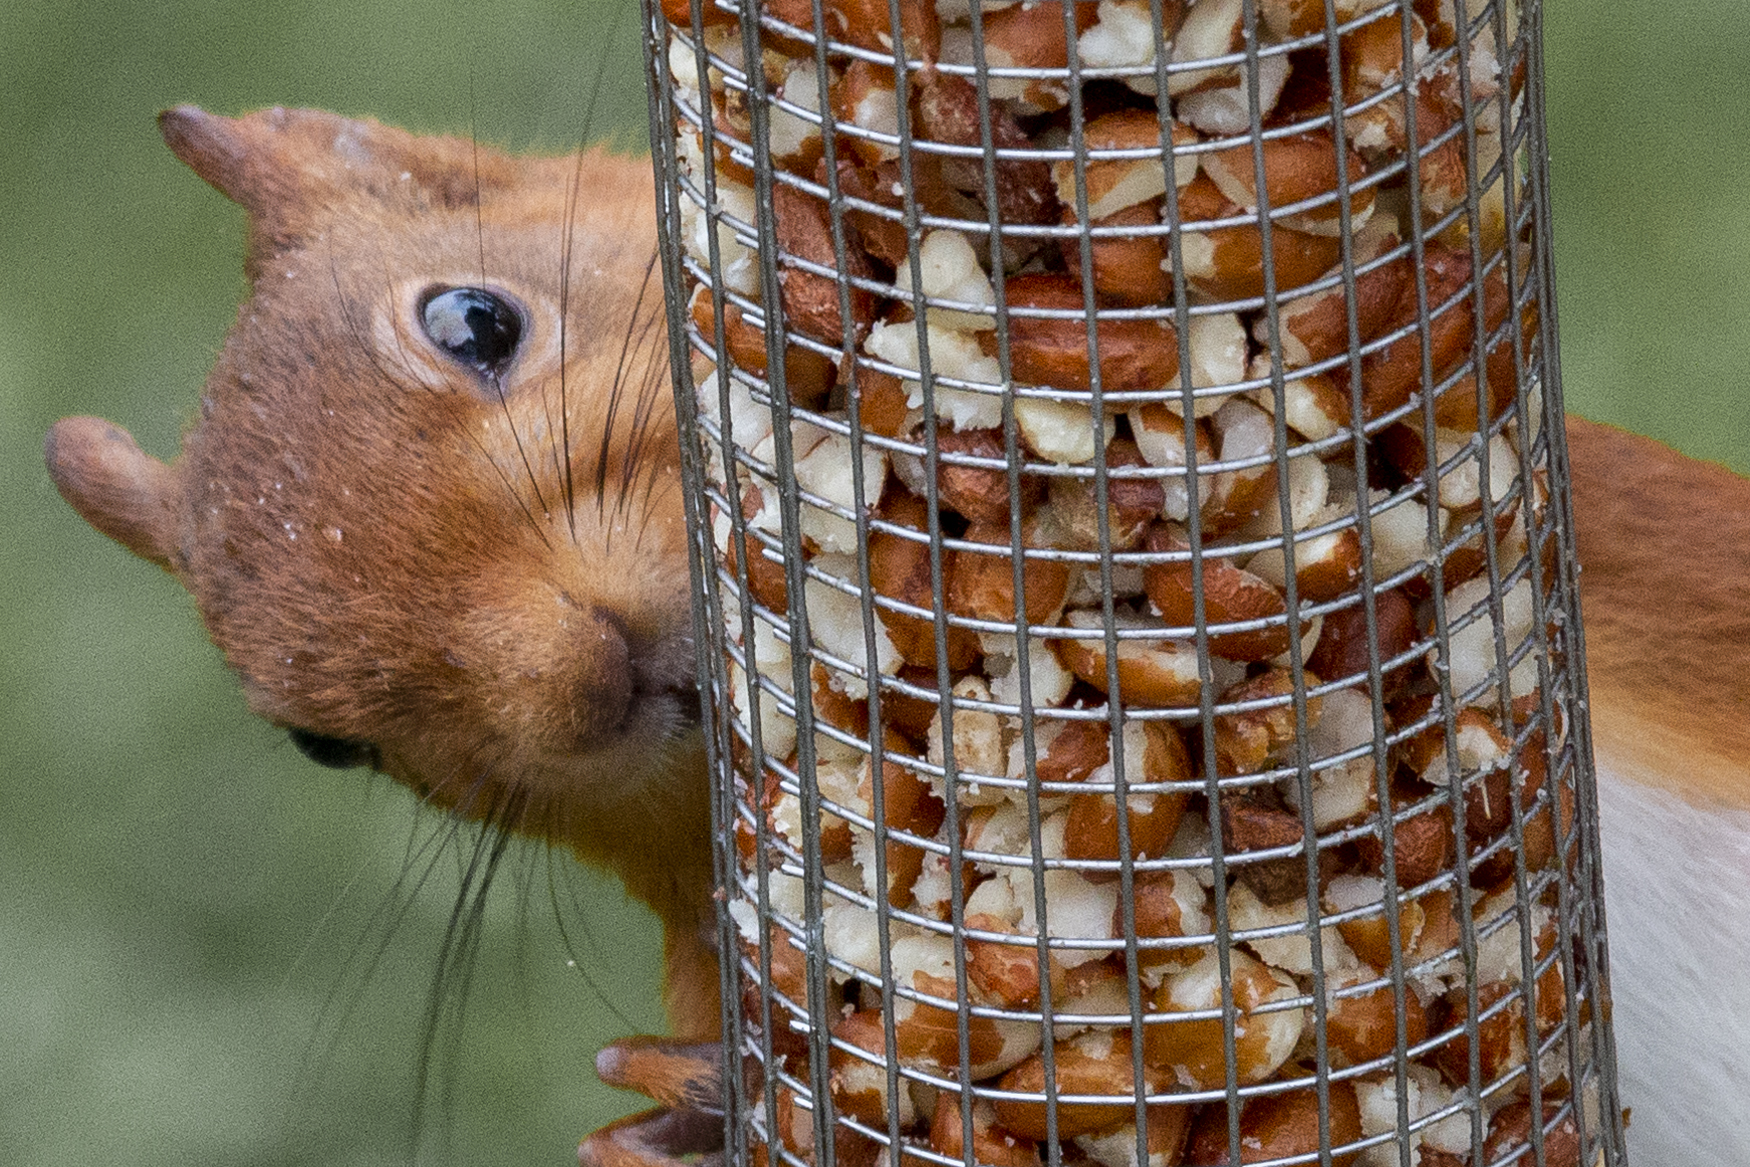 Red squirrel feeding on peanuts